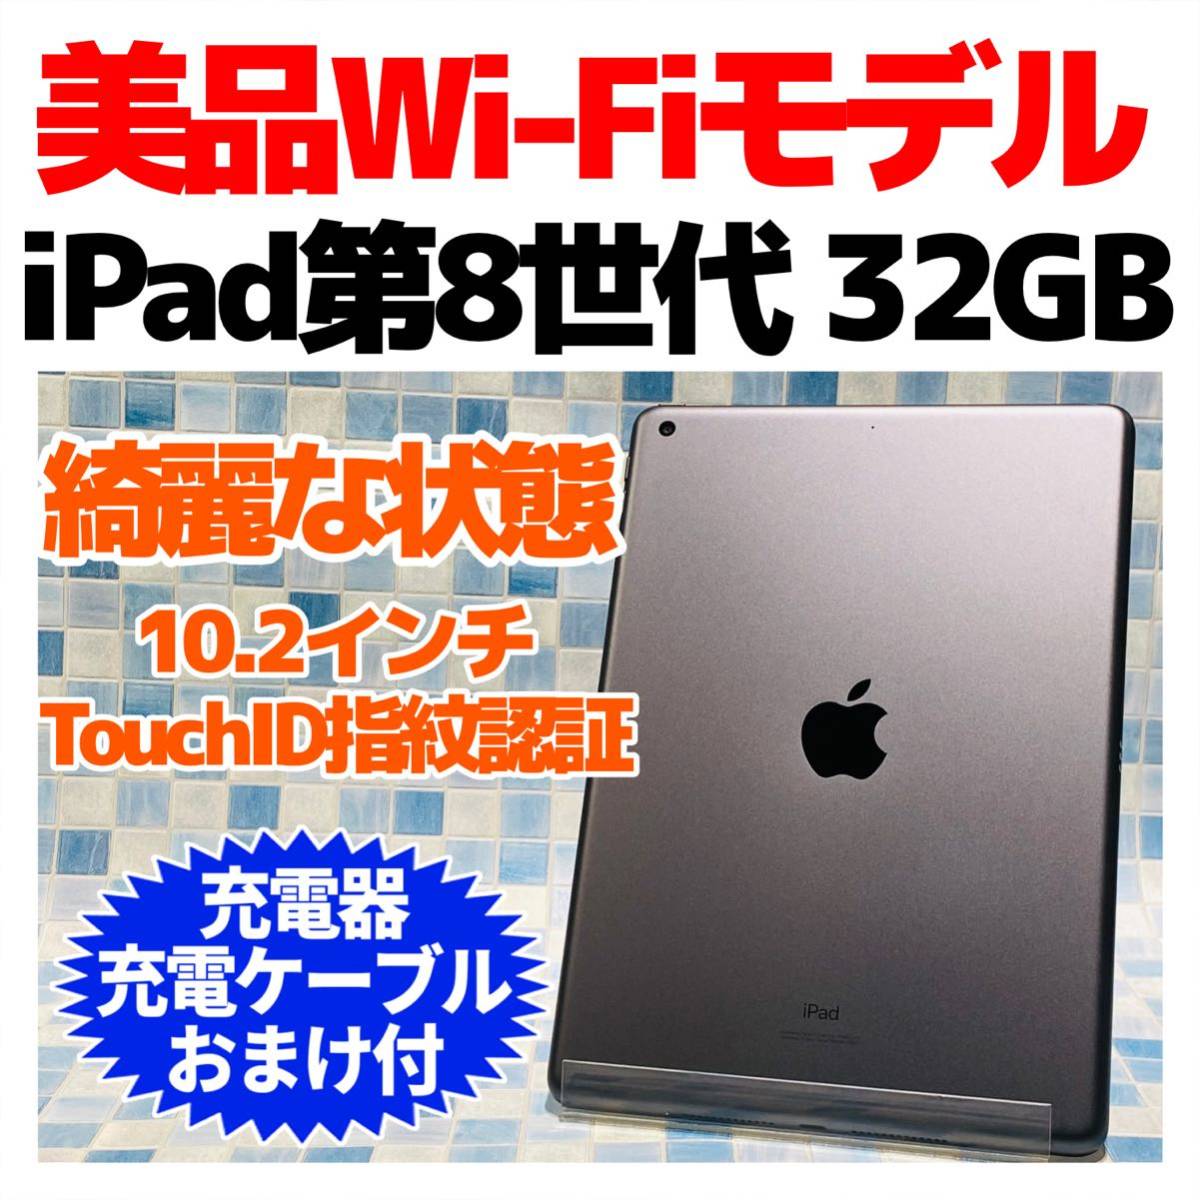 得価お得】 APPLE iPad IPAD2 WI-FIモデル32GB 白 3tVWa-m46235454131